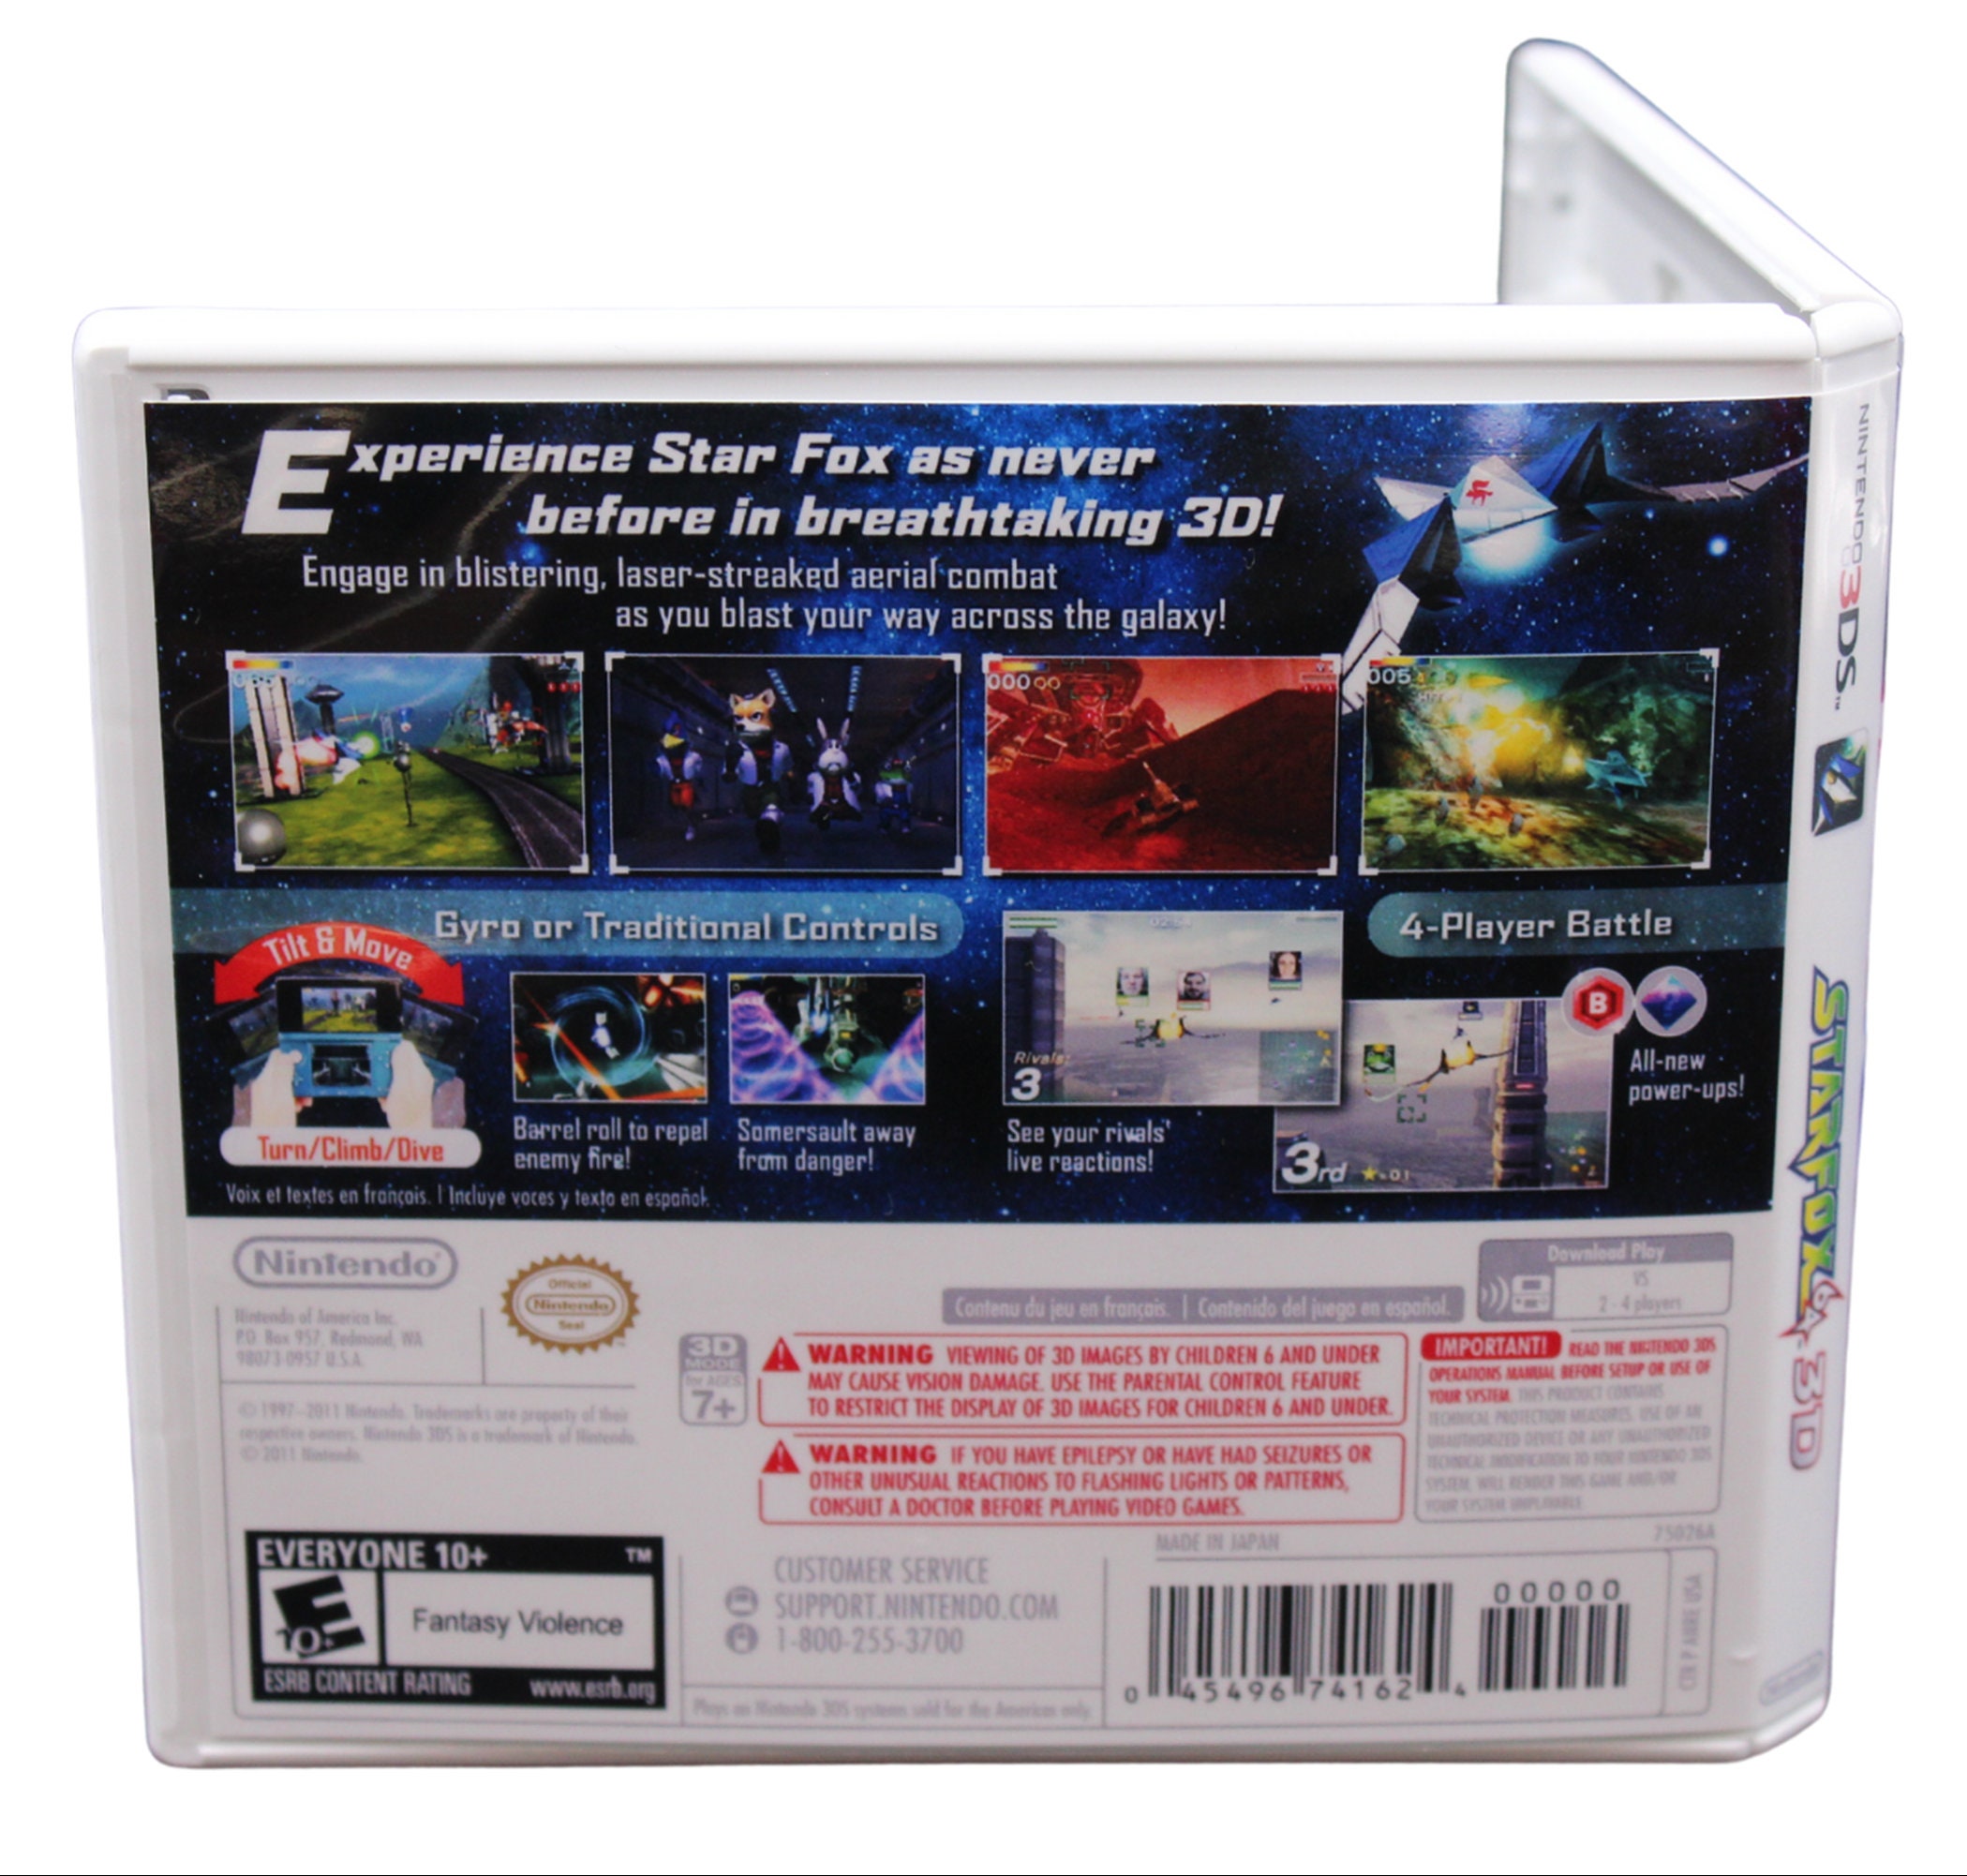 Star Fox 64 3D for Nintendo 3DS